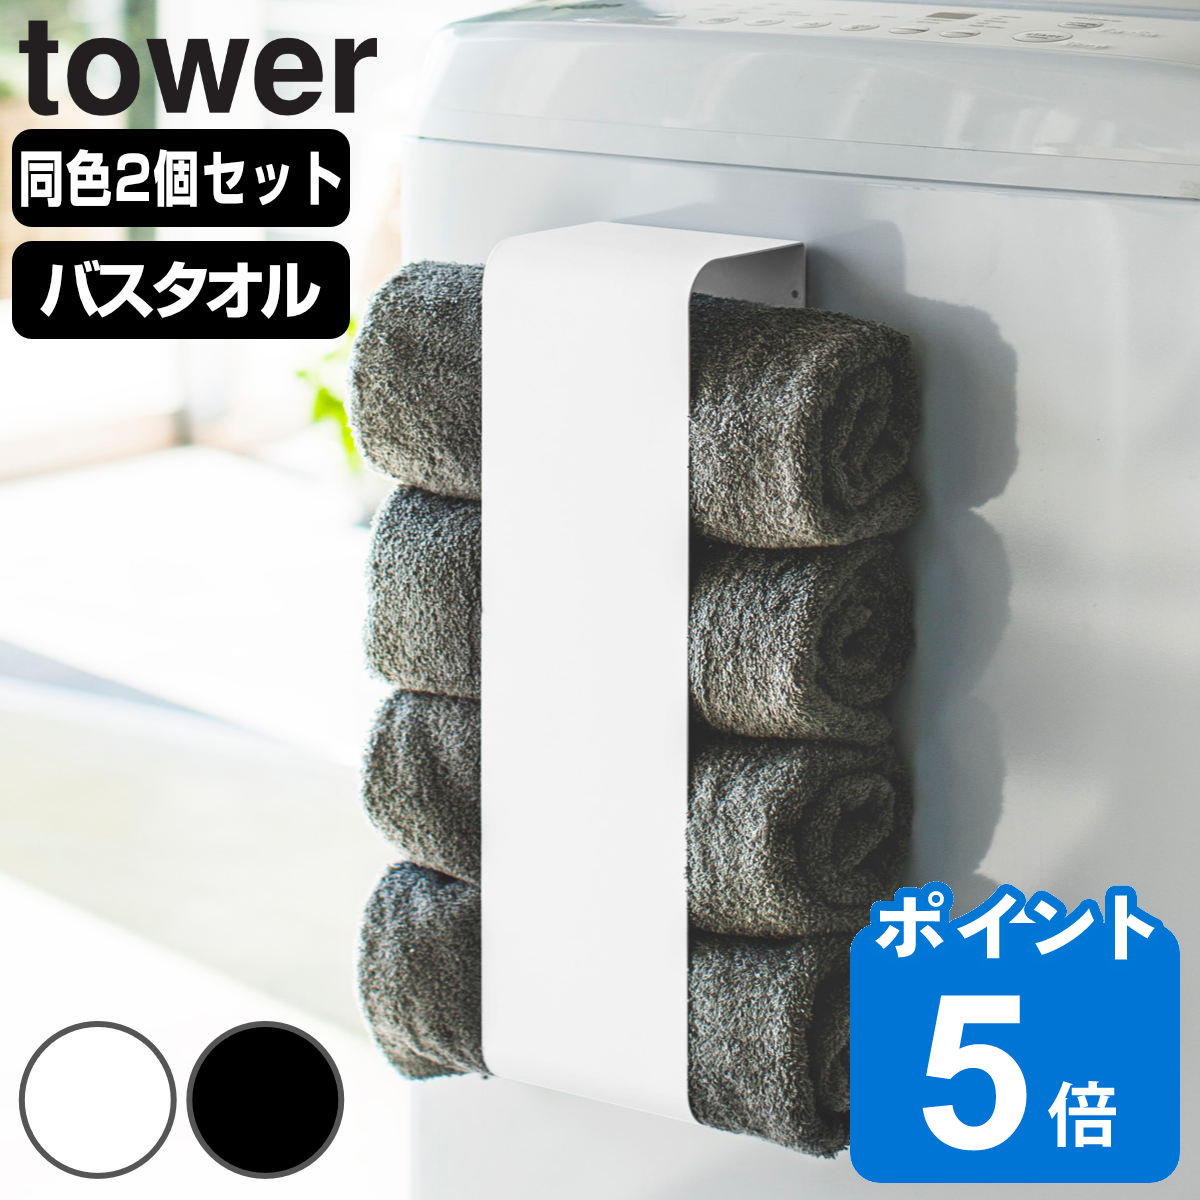 山崎実業 tower マグネットバスタオルホルダー タワー 2個セット